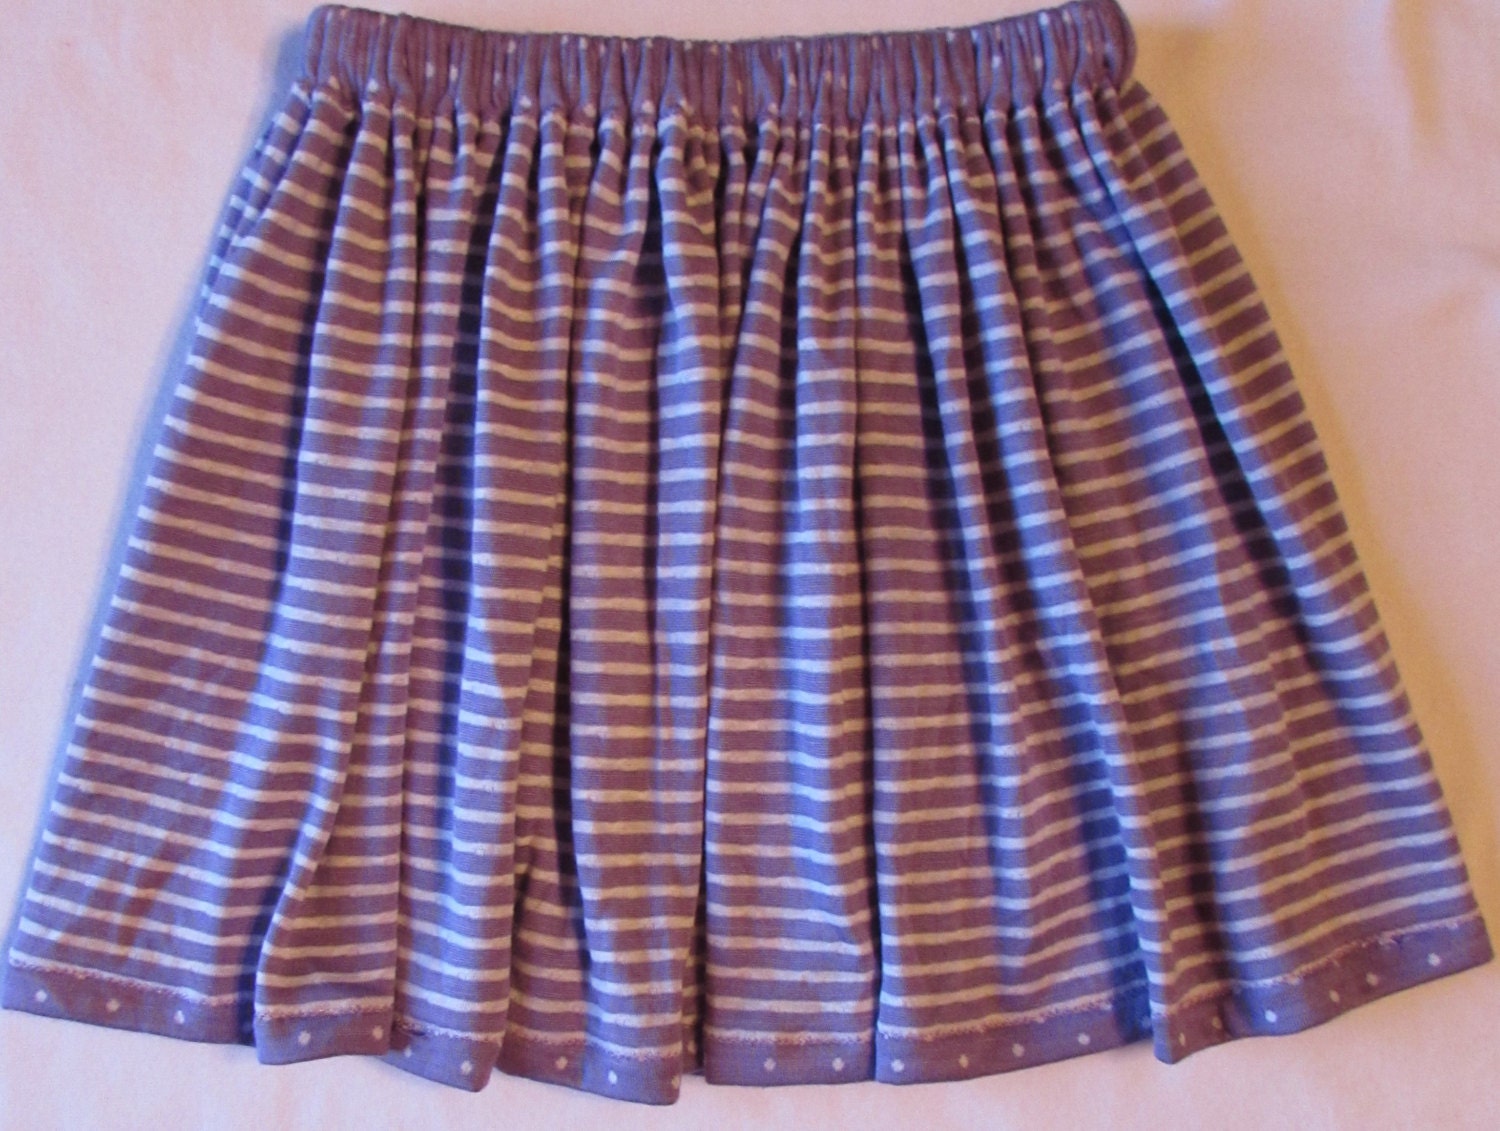 Knit skirt/girls knit skirt/toddler skirt/reversible | Etsy